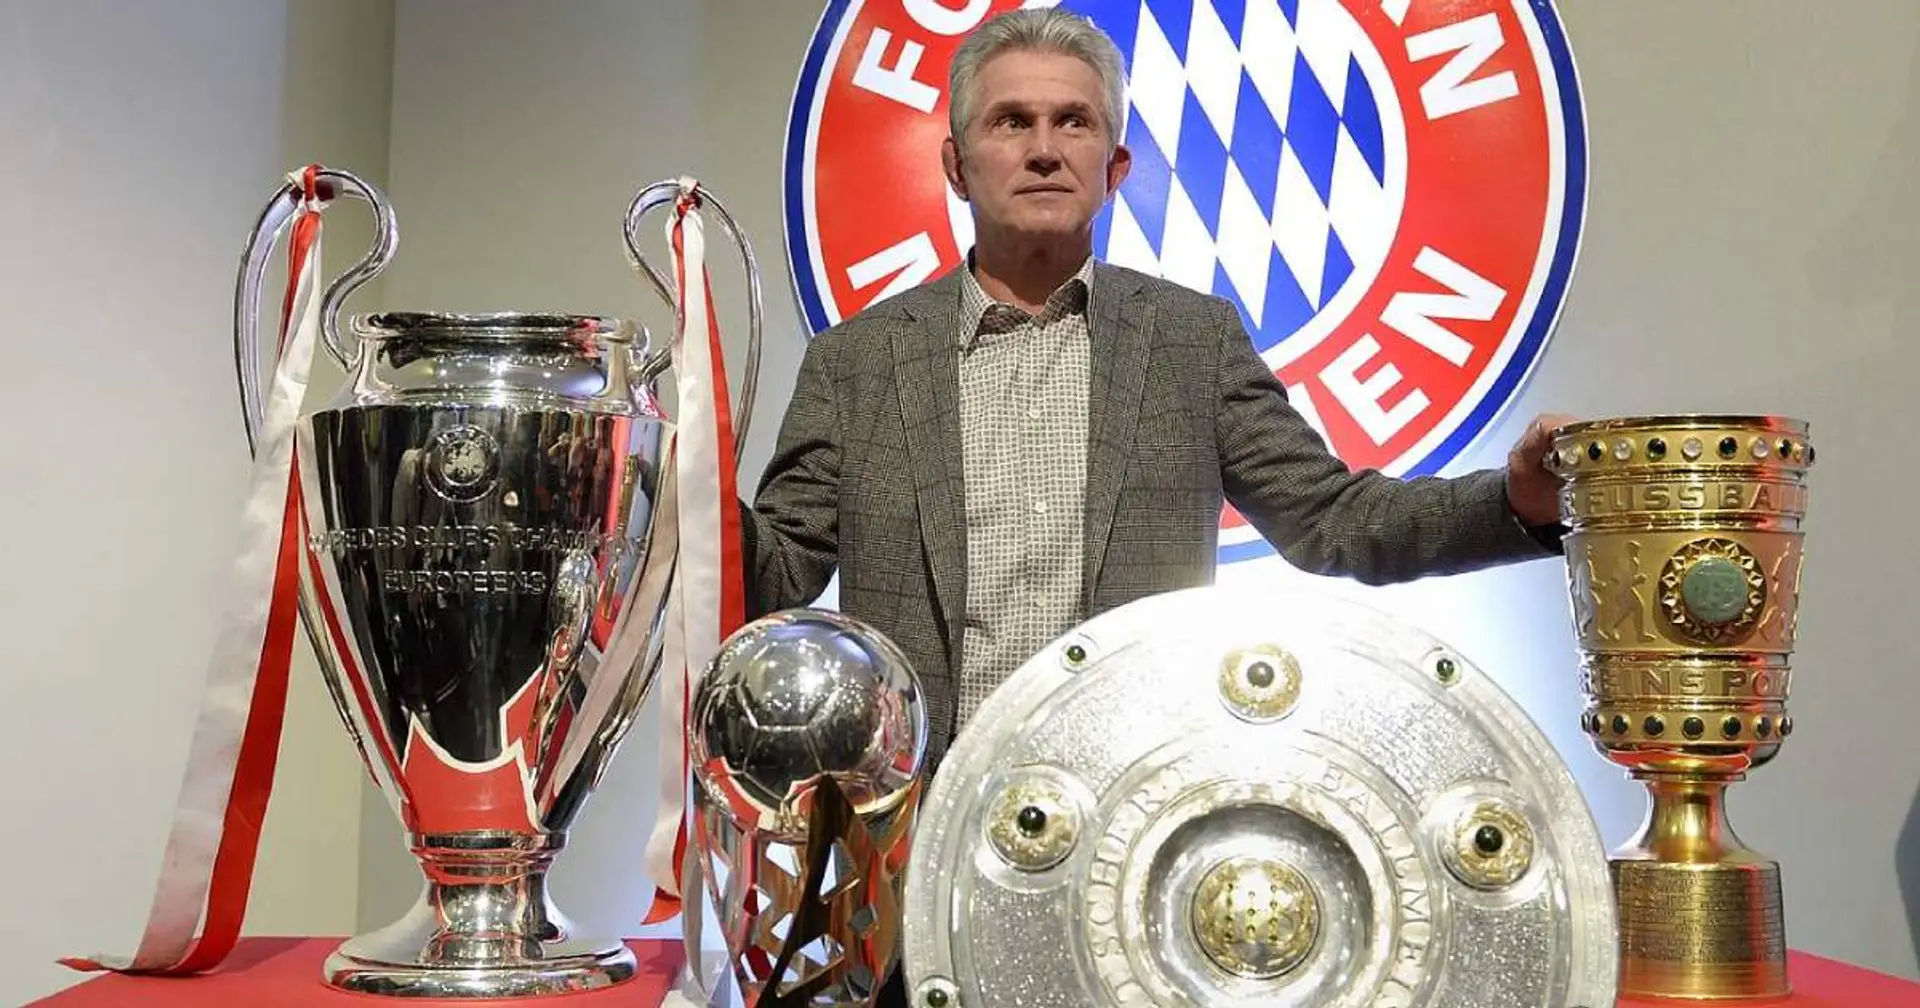 "Ruhe und Wärme ausgestrahlt": Laut dem Experten war Heynckes der beste Bayern-Trainer in Sachen öffentliche Kommunikation 